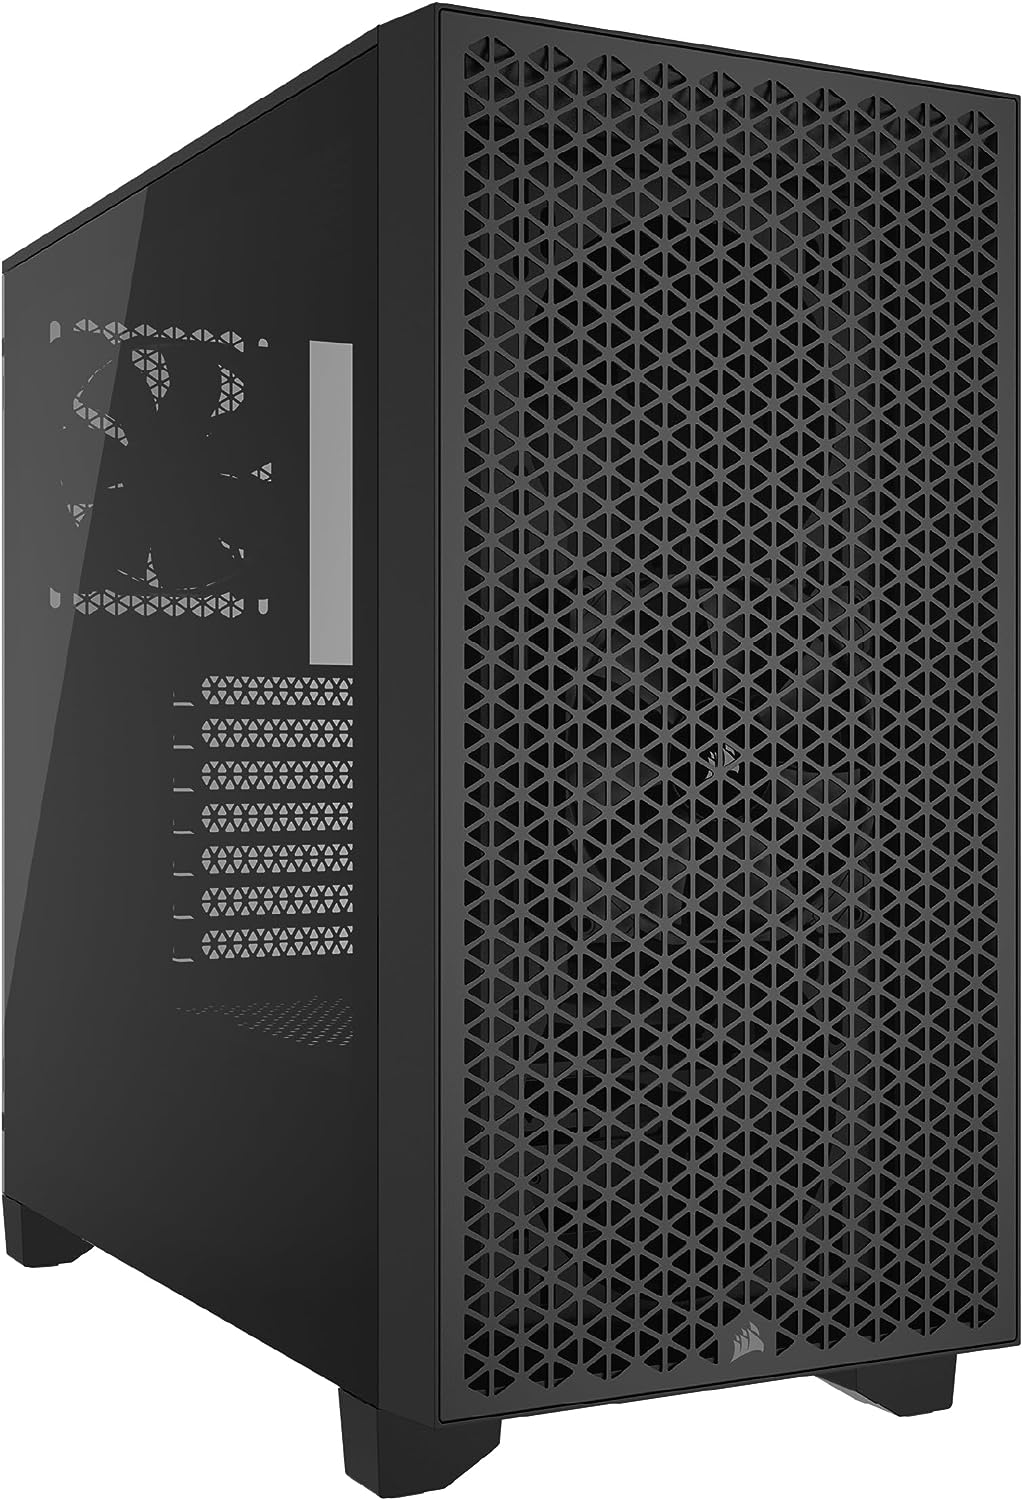 CORSAIR 3000D AIRFLOW Mid-Tower PC Case - Black - 2x SP120 ELITE Fans - Four-Slot GPU Support – Fits up to 8x 120mm fans - High-Airflow Design